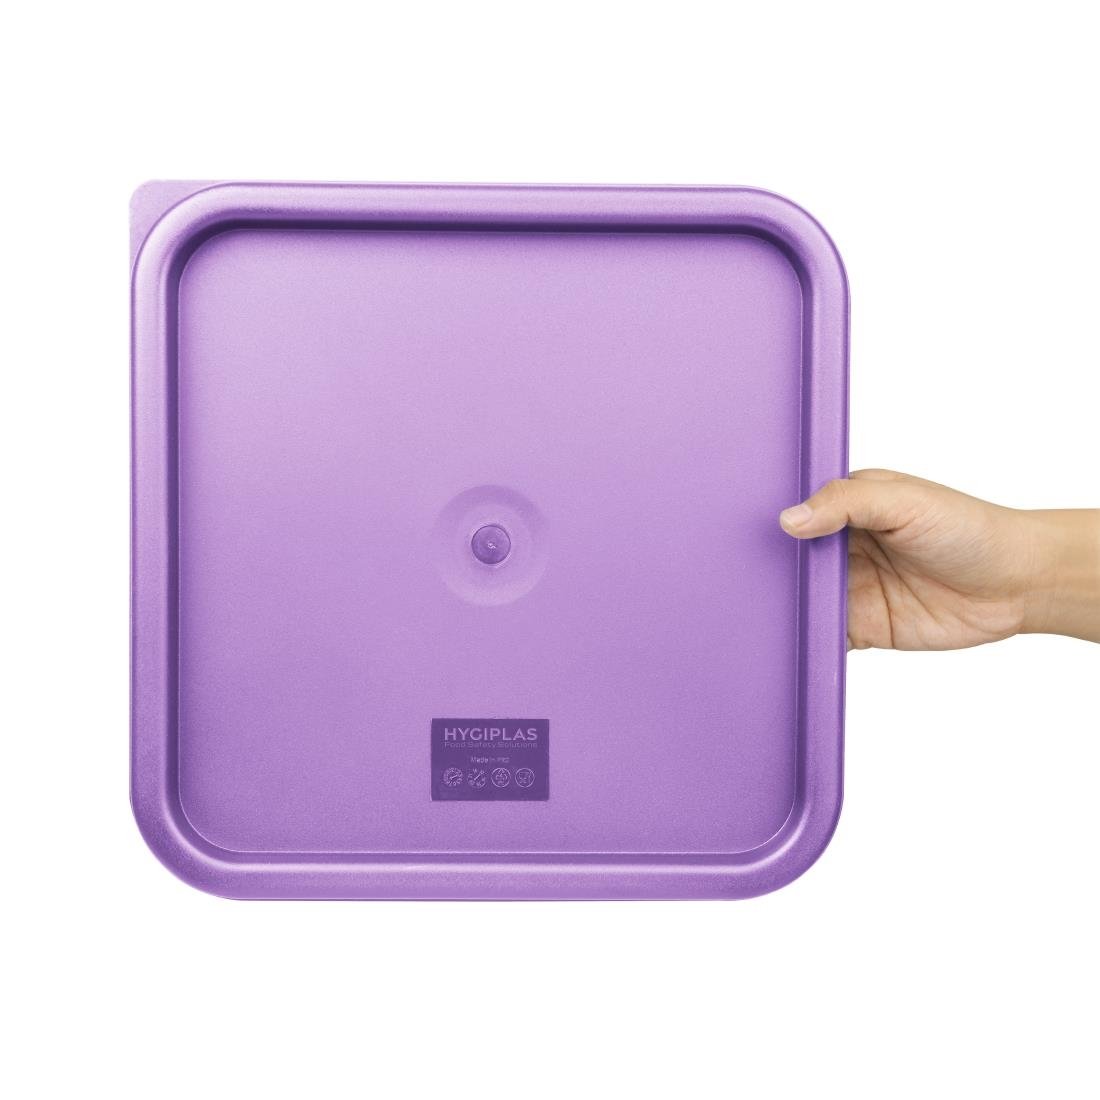 Grand couvercle carré pour boîte alimentaire Hygiplas violet